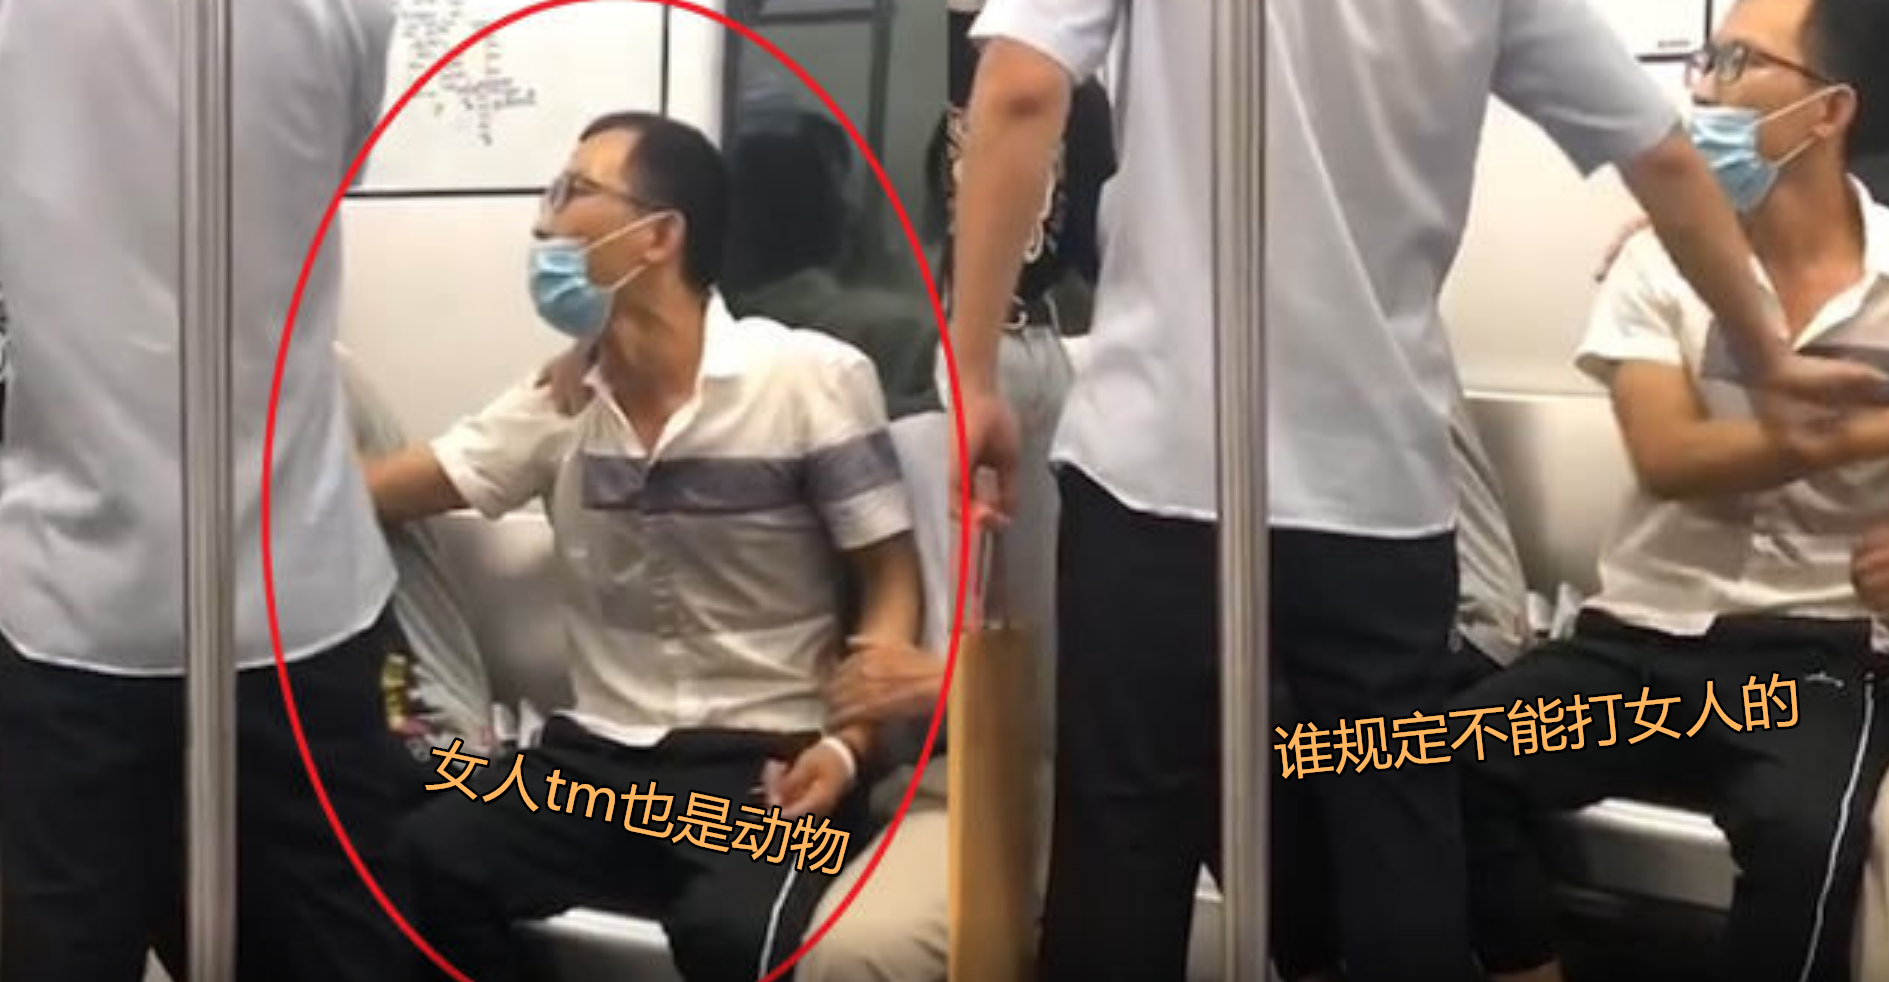 武汉现“地铁丐帮” 乞讨女孩对男乘客摸胸搂腰_社会_环球网